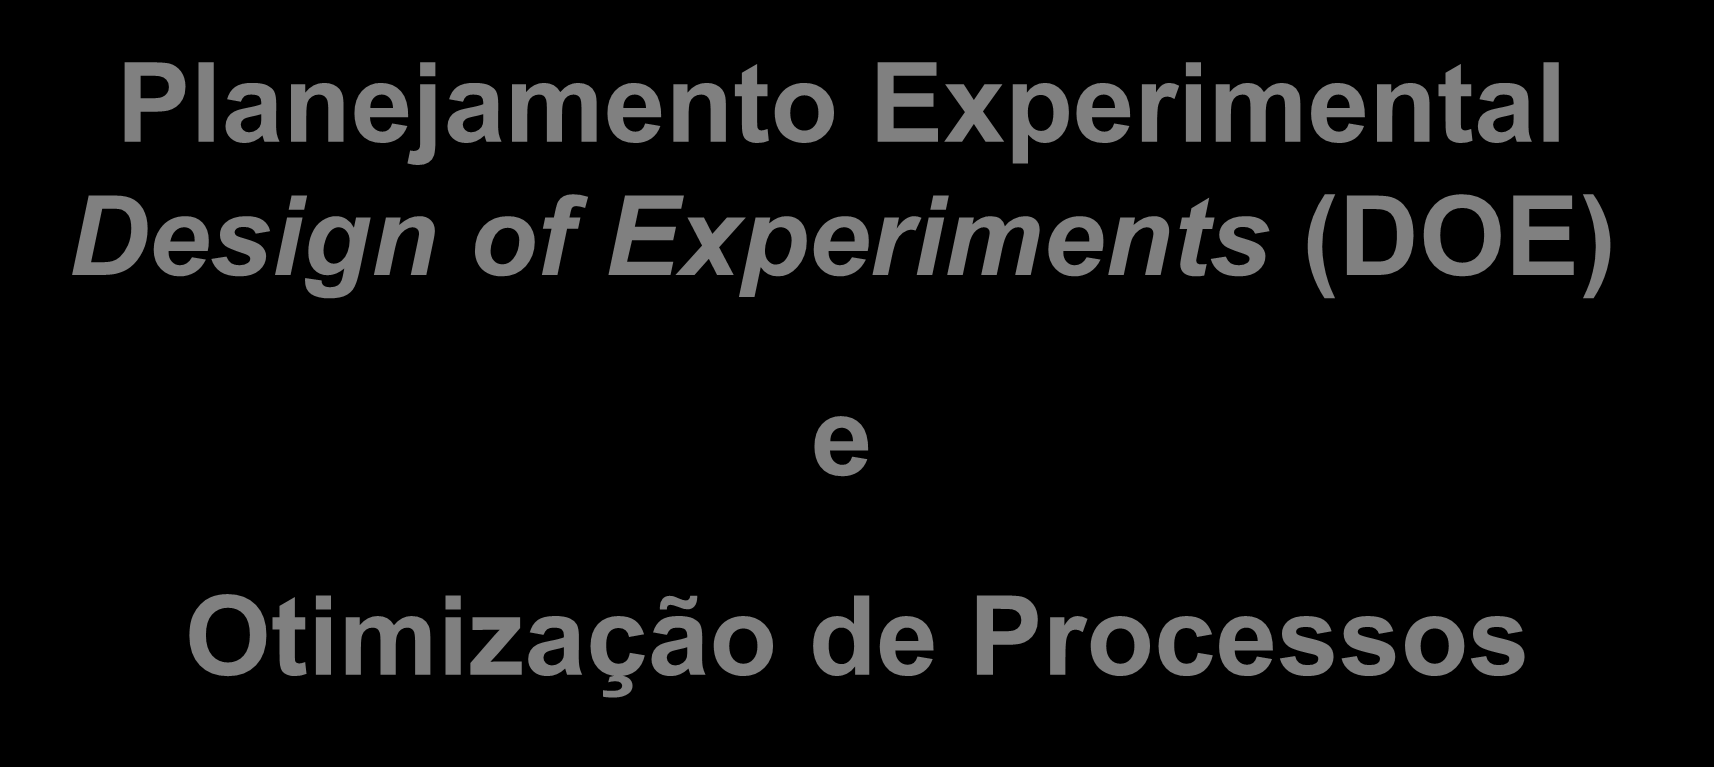 Planejamento Experimental Design of Experiments (DOE) e Otimização de Processos Livro Texto: Planejamento de